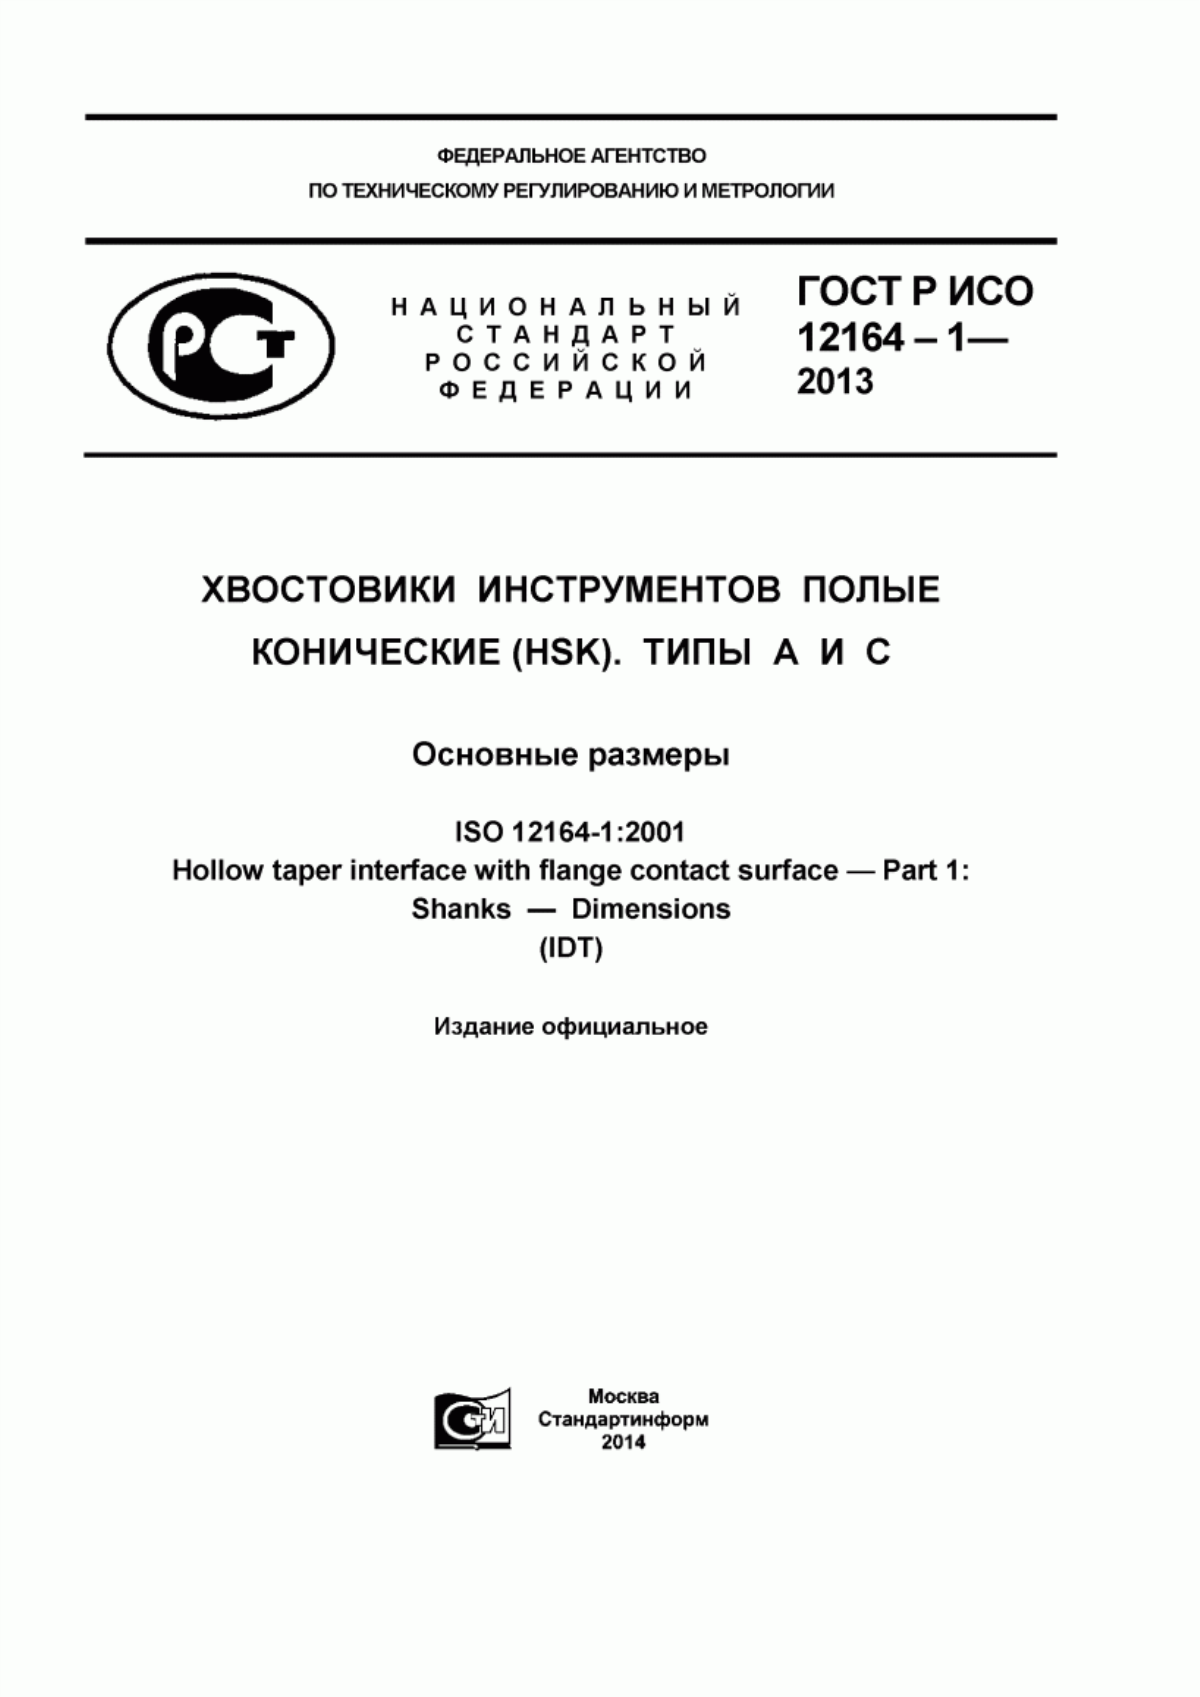 ГОСТ Р ИСО 12164-1-2013 Хвостовики инструментов полые конические (HSK). Типы А и С. Основные размеры